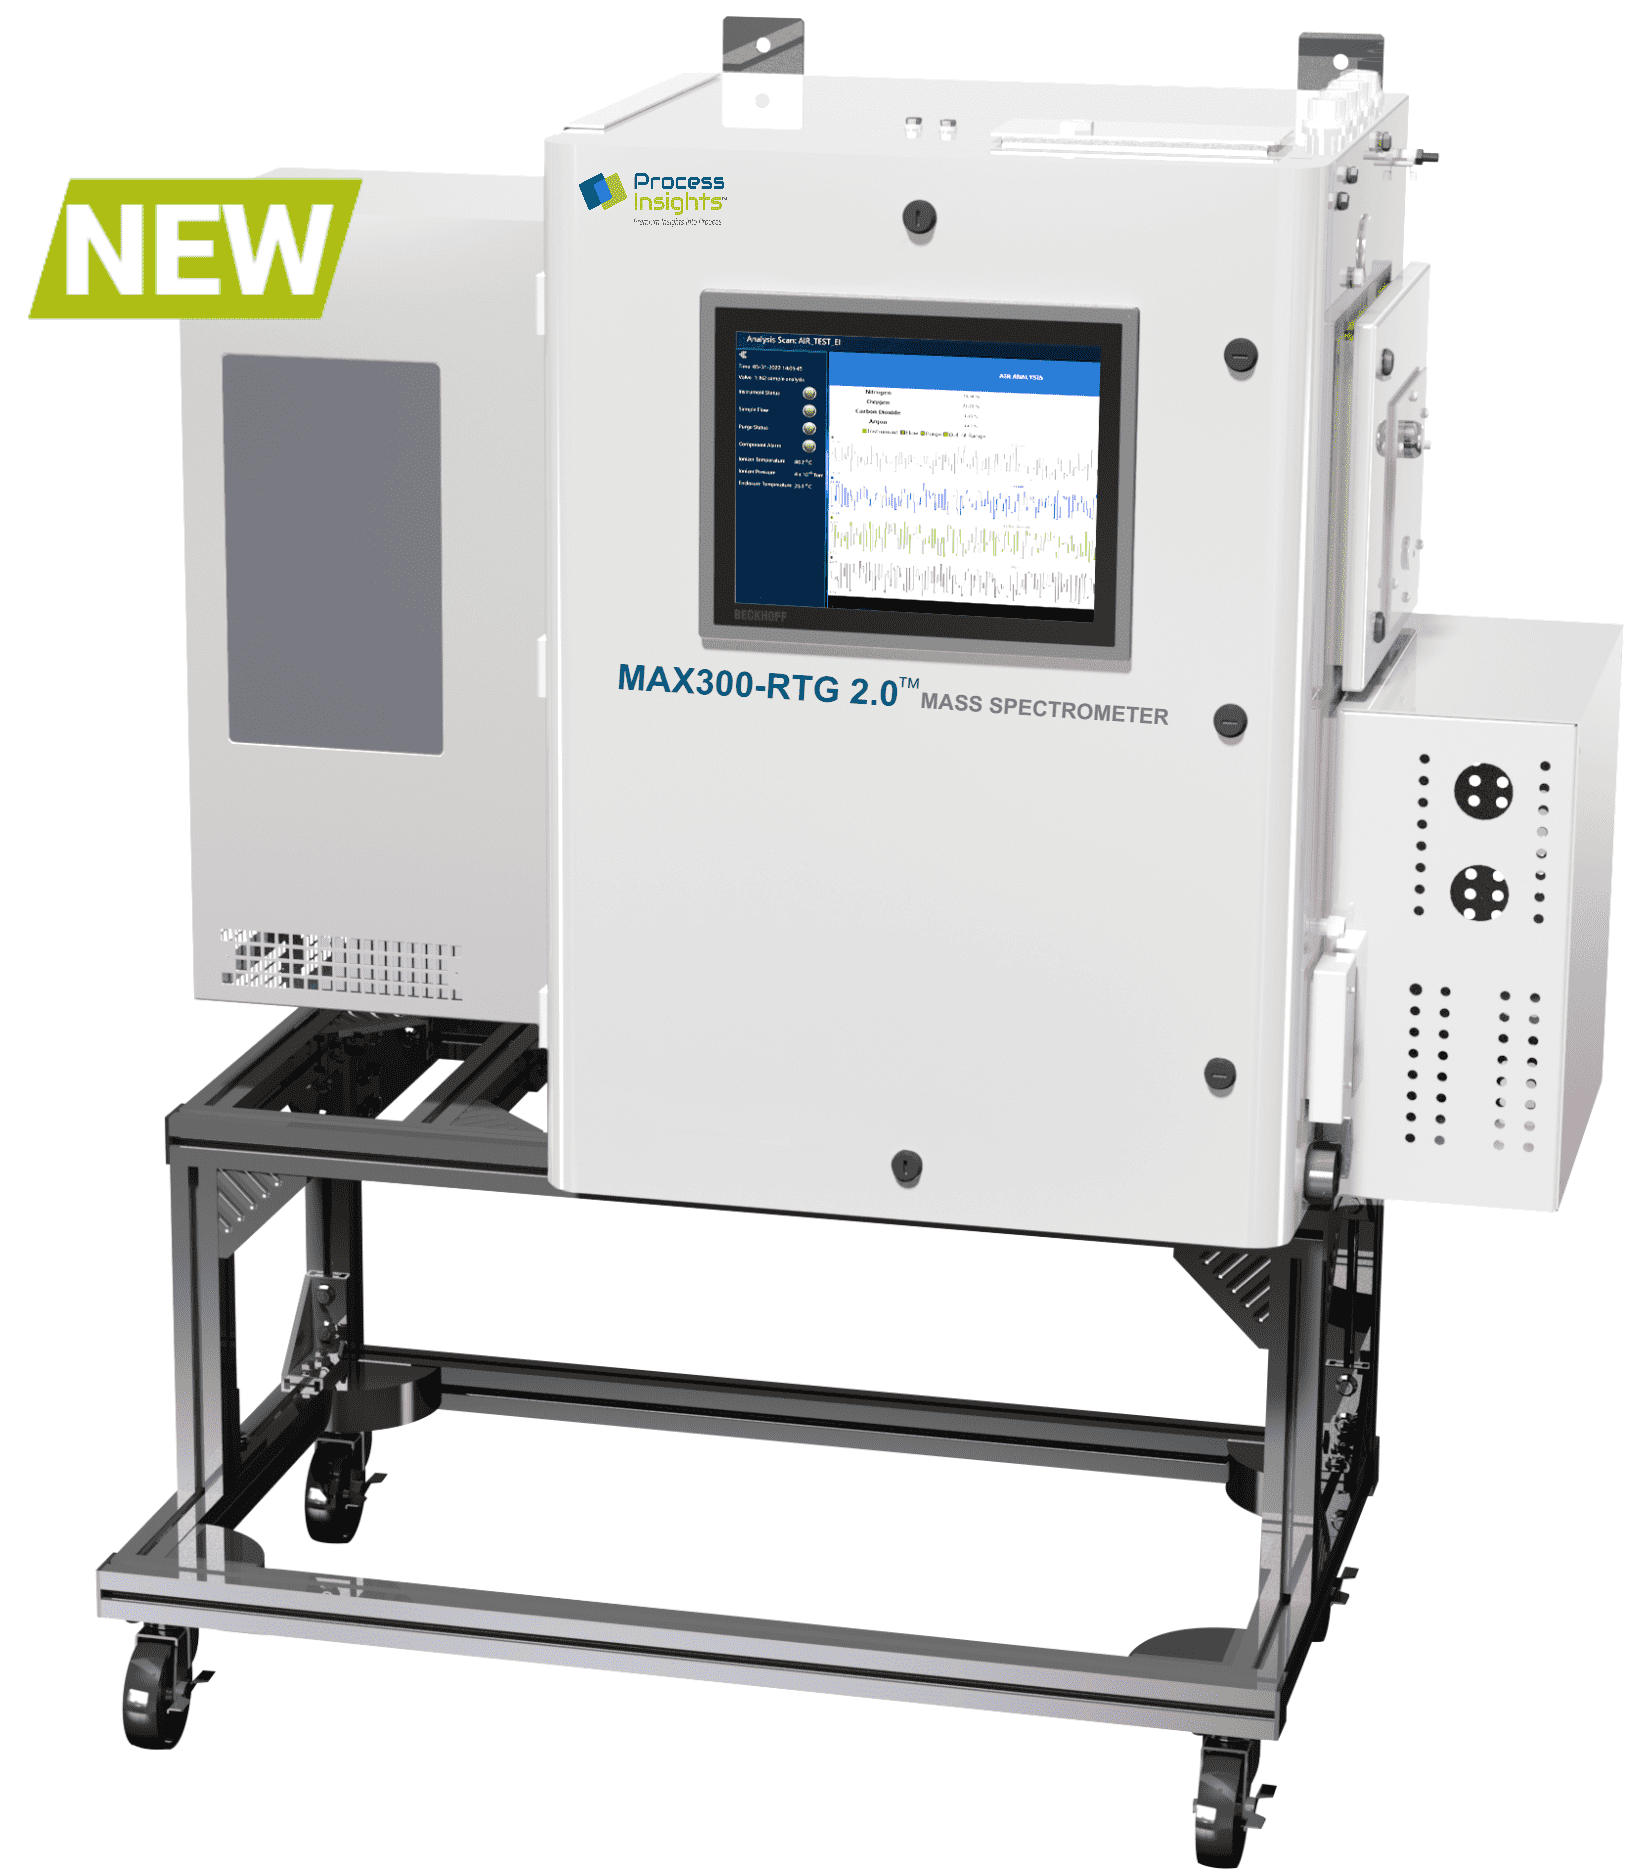 max300-rtg 2.0 mass spectrometer